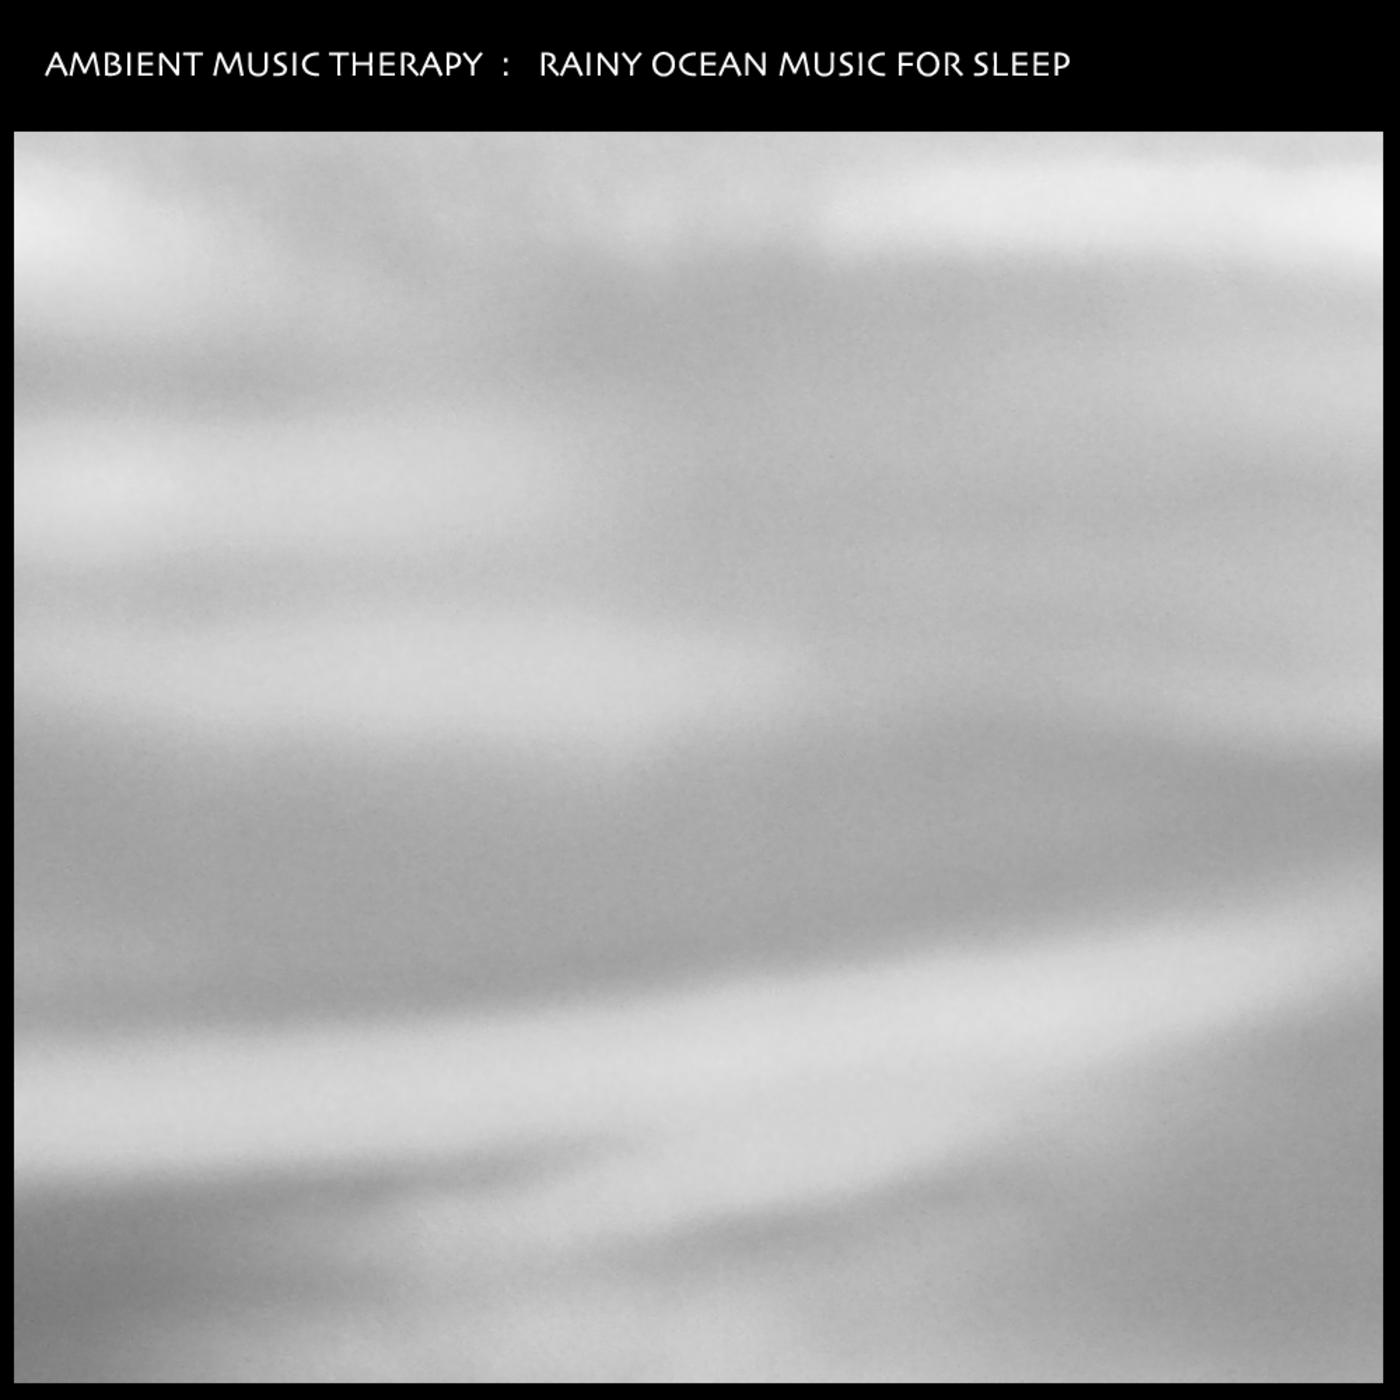 Rainy Ocean Music For Sleep